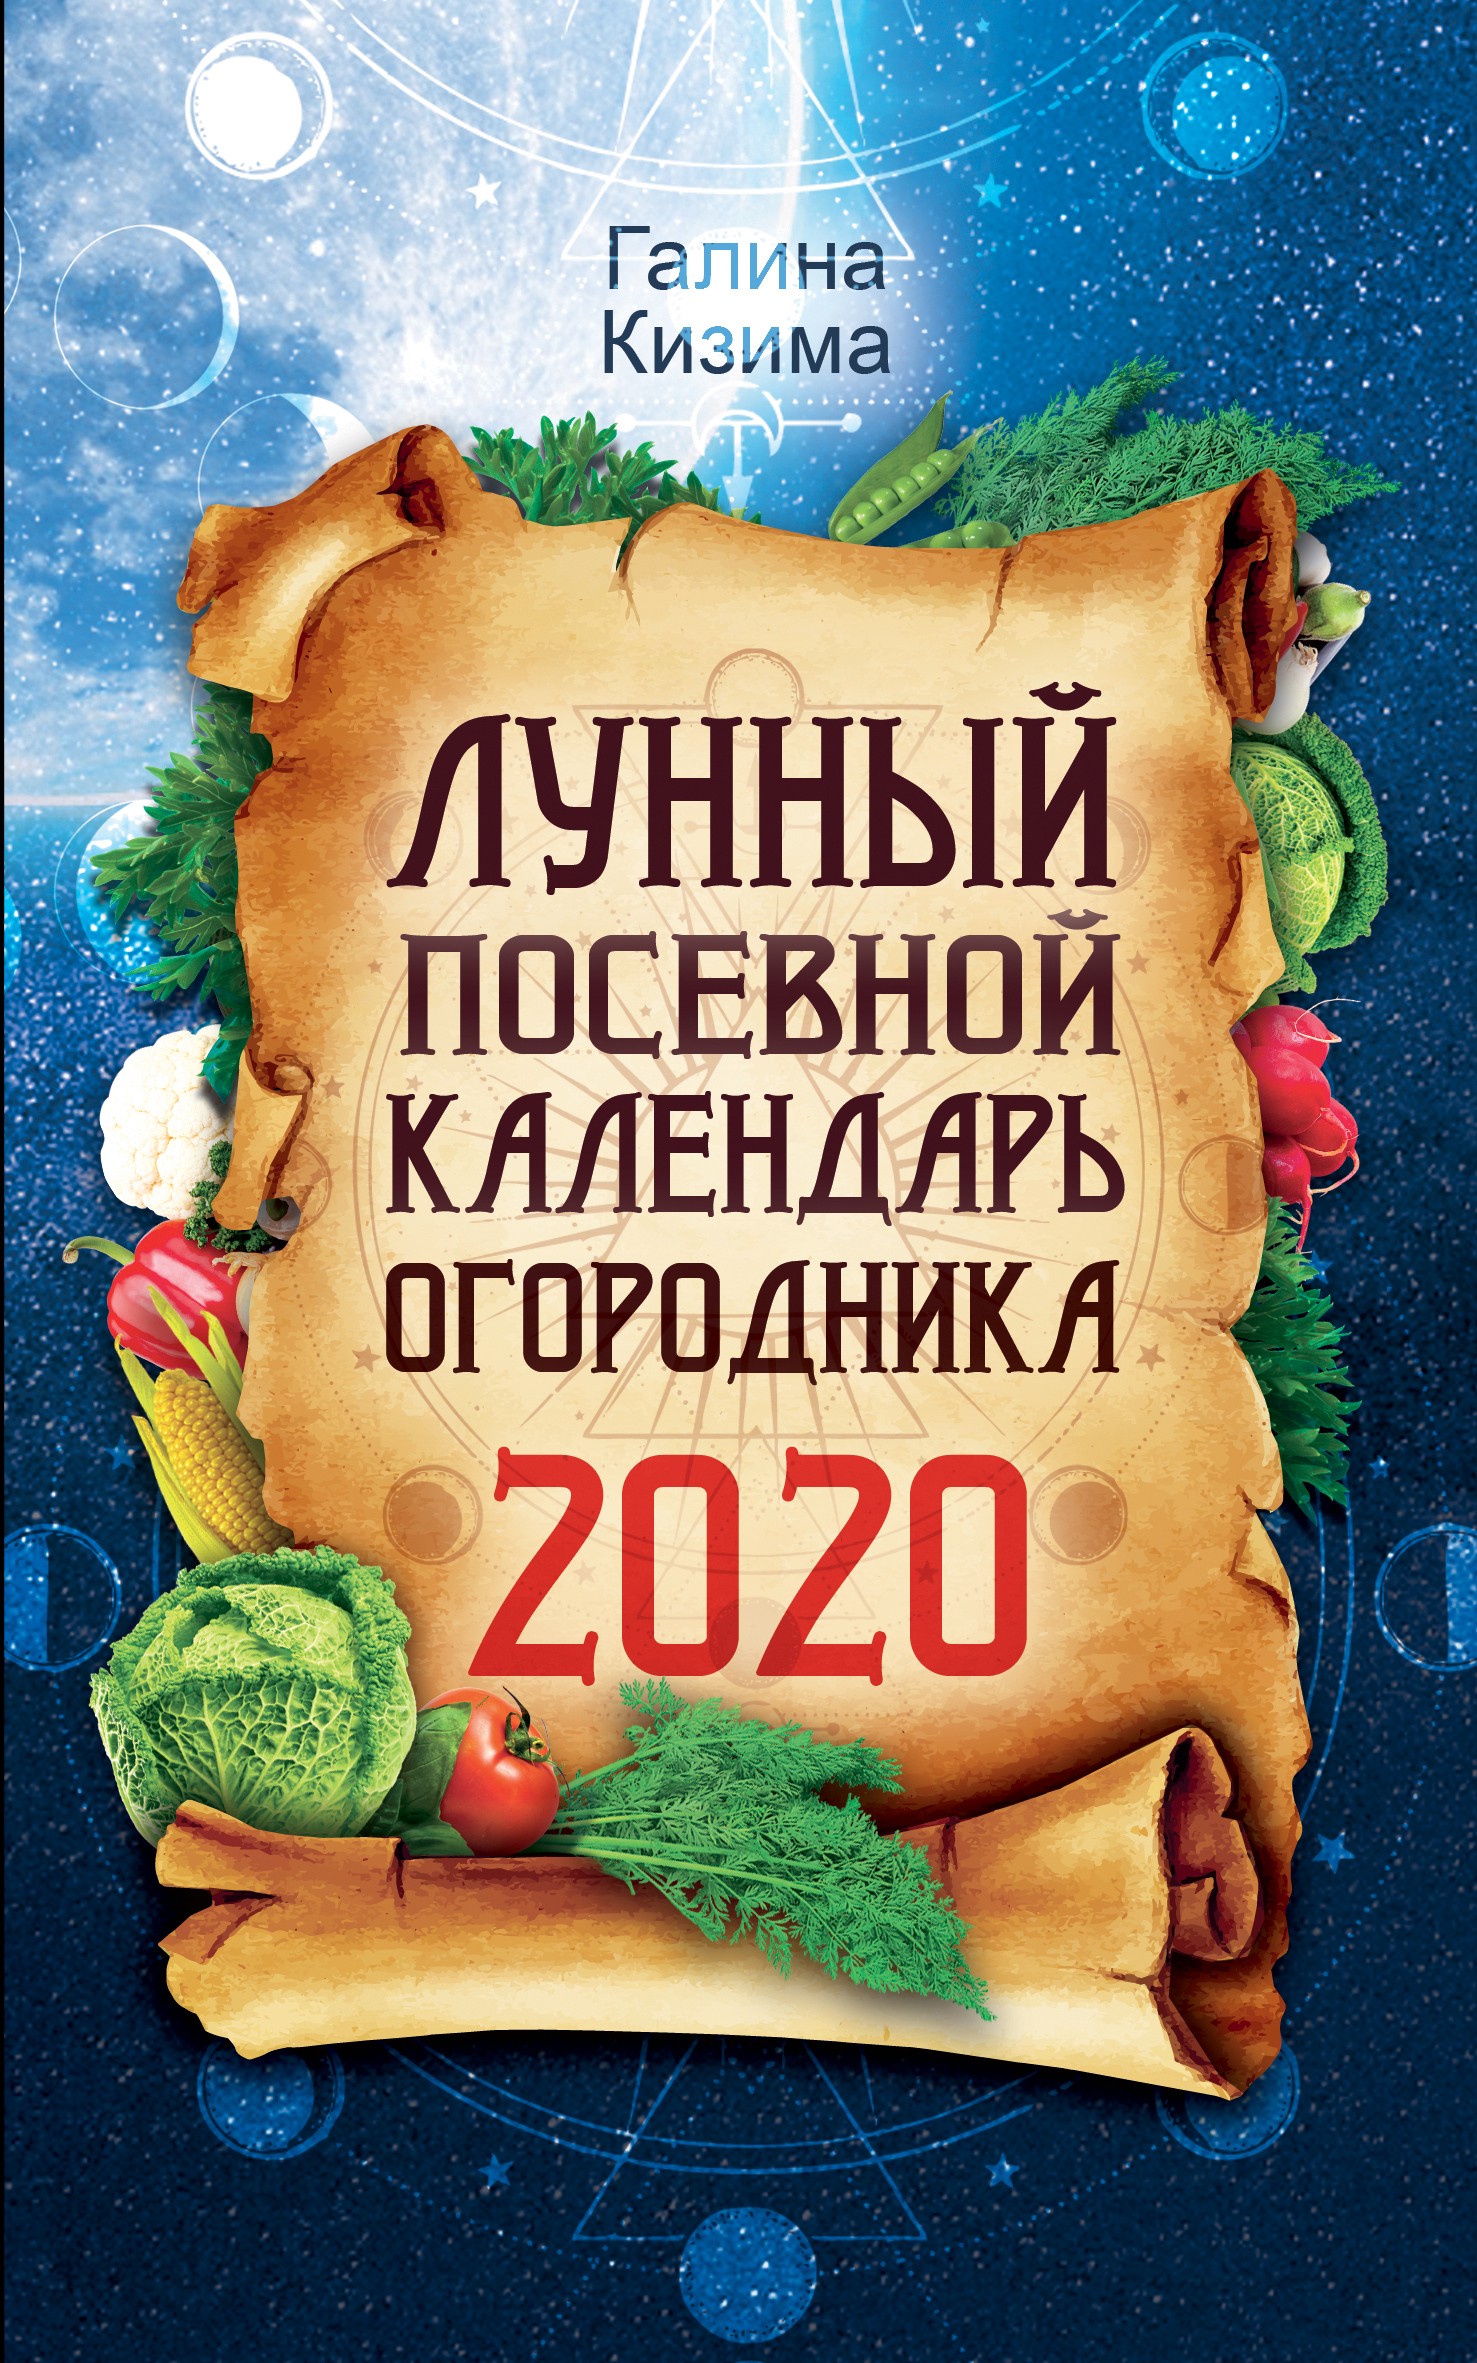 Скачать Лунный посевной календарь огородника на 2020 год - Галина Кизима